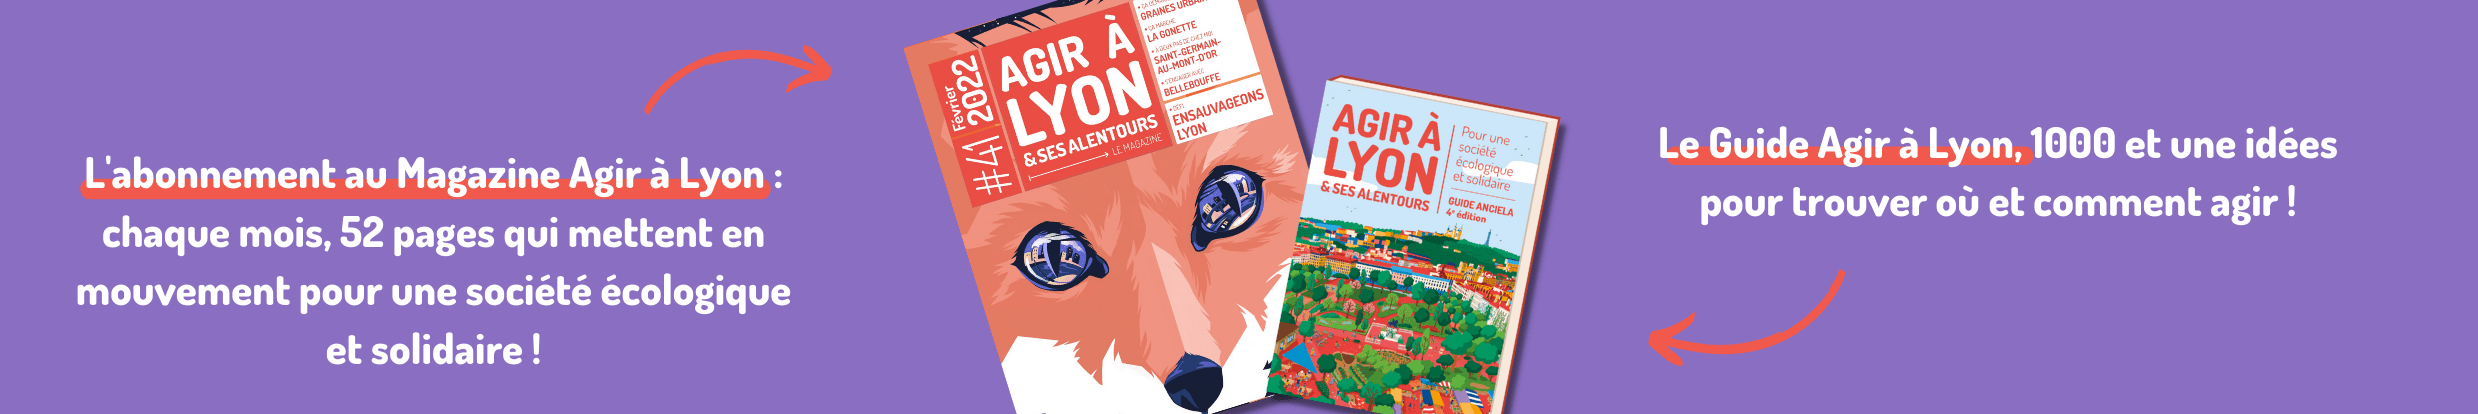 image du magazine agir à Lyon et du Guide Agir à Lyon